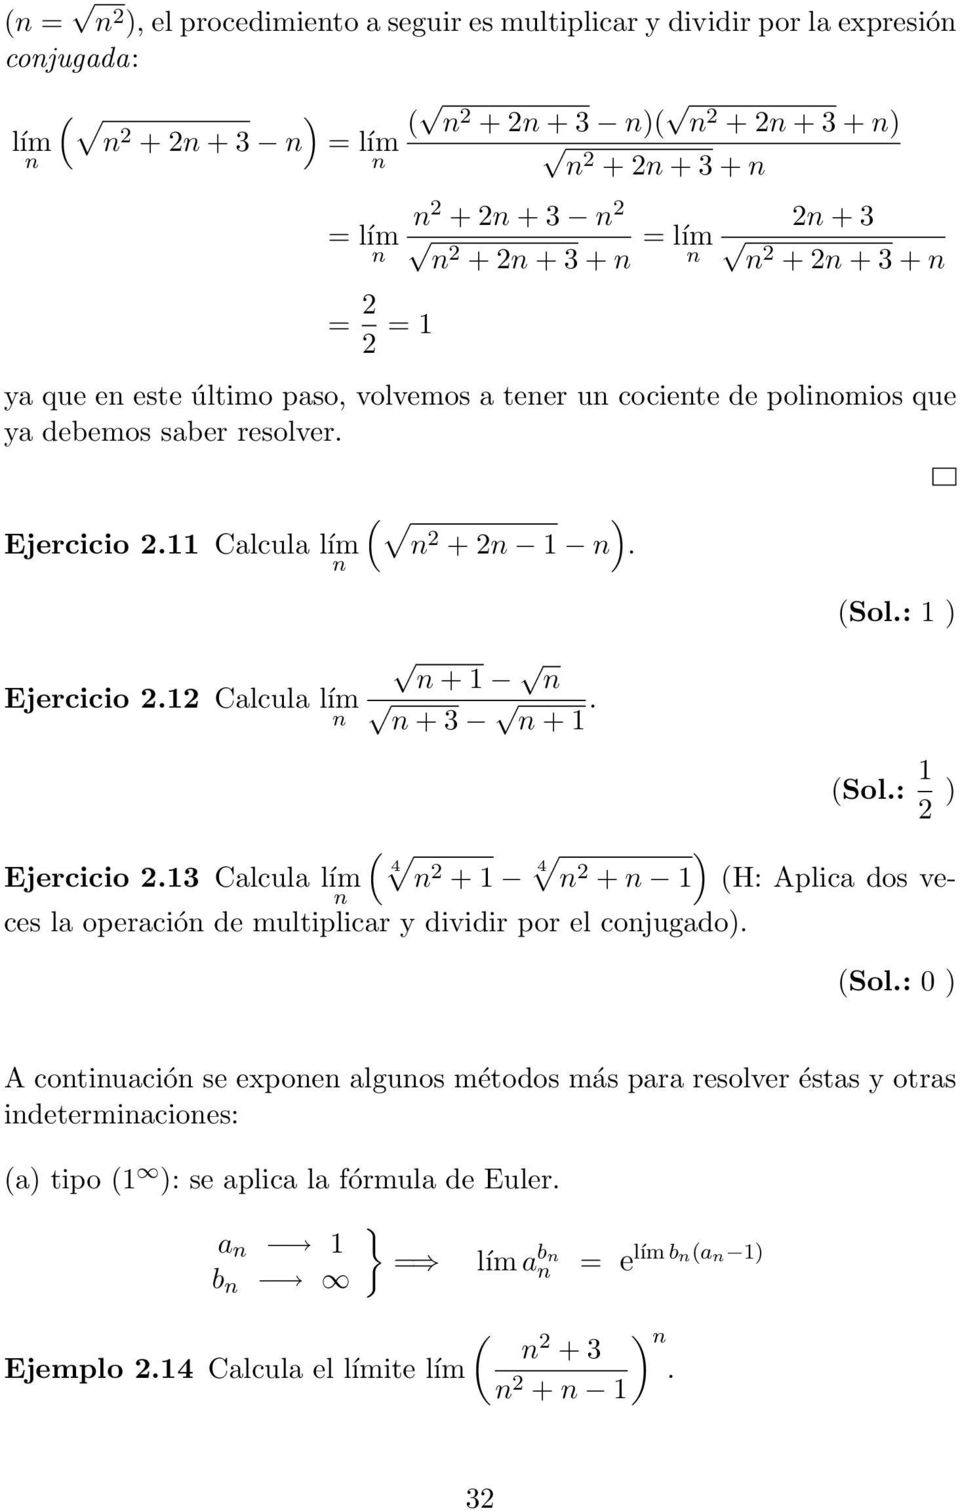 12 Calcula lím + 1 + 3 + 1. (Sol.: 1 2 ) ( 4 Ejercicio 2.13 Calcula lím 2 + 1 4 2 + 1) (H: Aplica dos veces la operació de multiplicar y dividir por el cojugado). (Sol.: 0 ) Acotiuacióse expoealguosmétodosmás pararesolveréstas yotras idetermiacioes: (a) tipo (1 ): se aplica la fórmula de Euler.